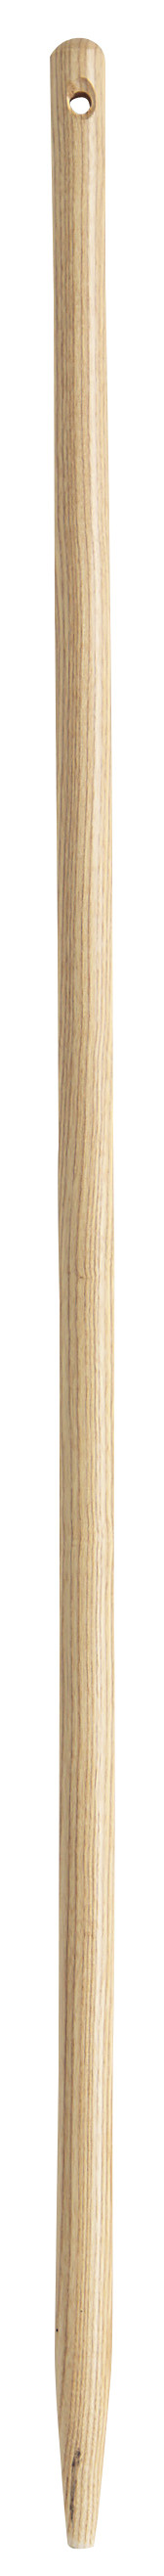 Manche de rechange pour binette forgée en bois - 130 cm - certifié PEFC 100%